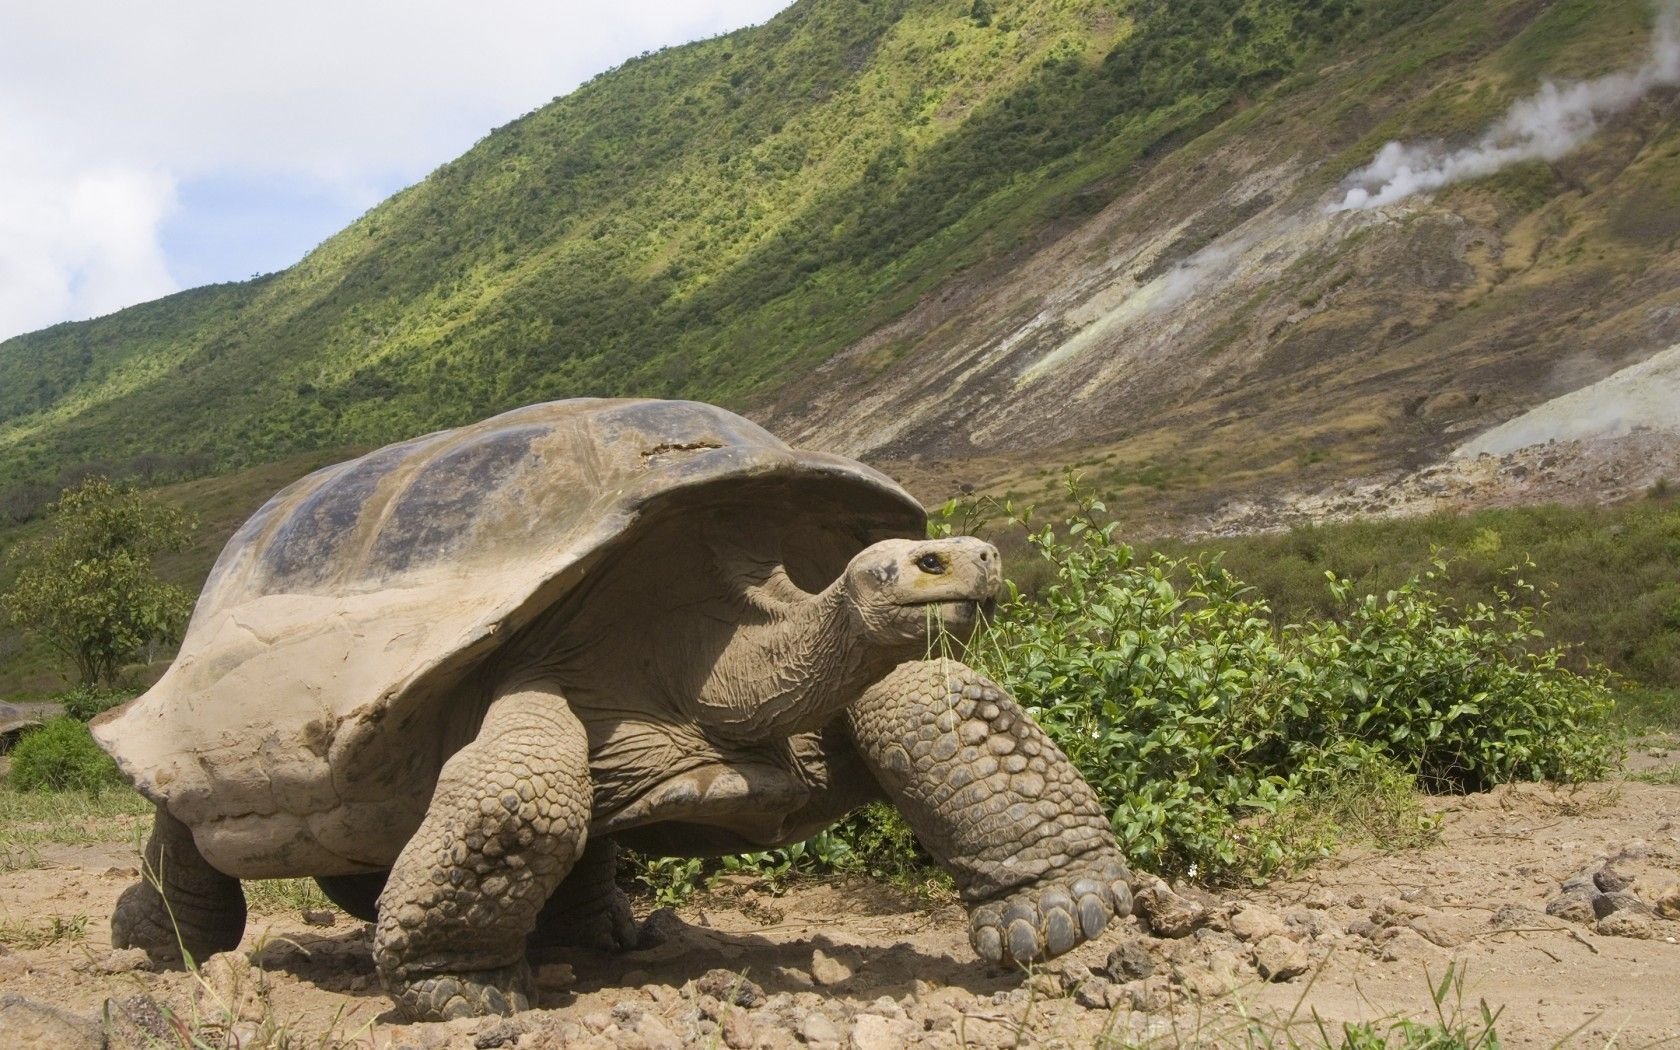 Череп галапагосской черепахи. Галапагосская черепаха. Остров Галапагос черепахи. Галапагос — Эквадор черепахи. Галапагосская гигантская черепаха.